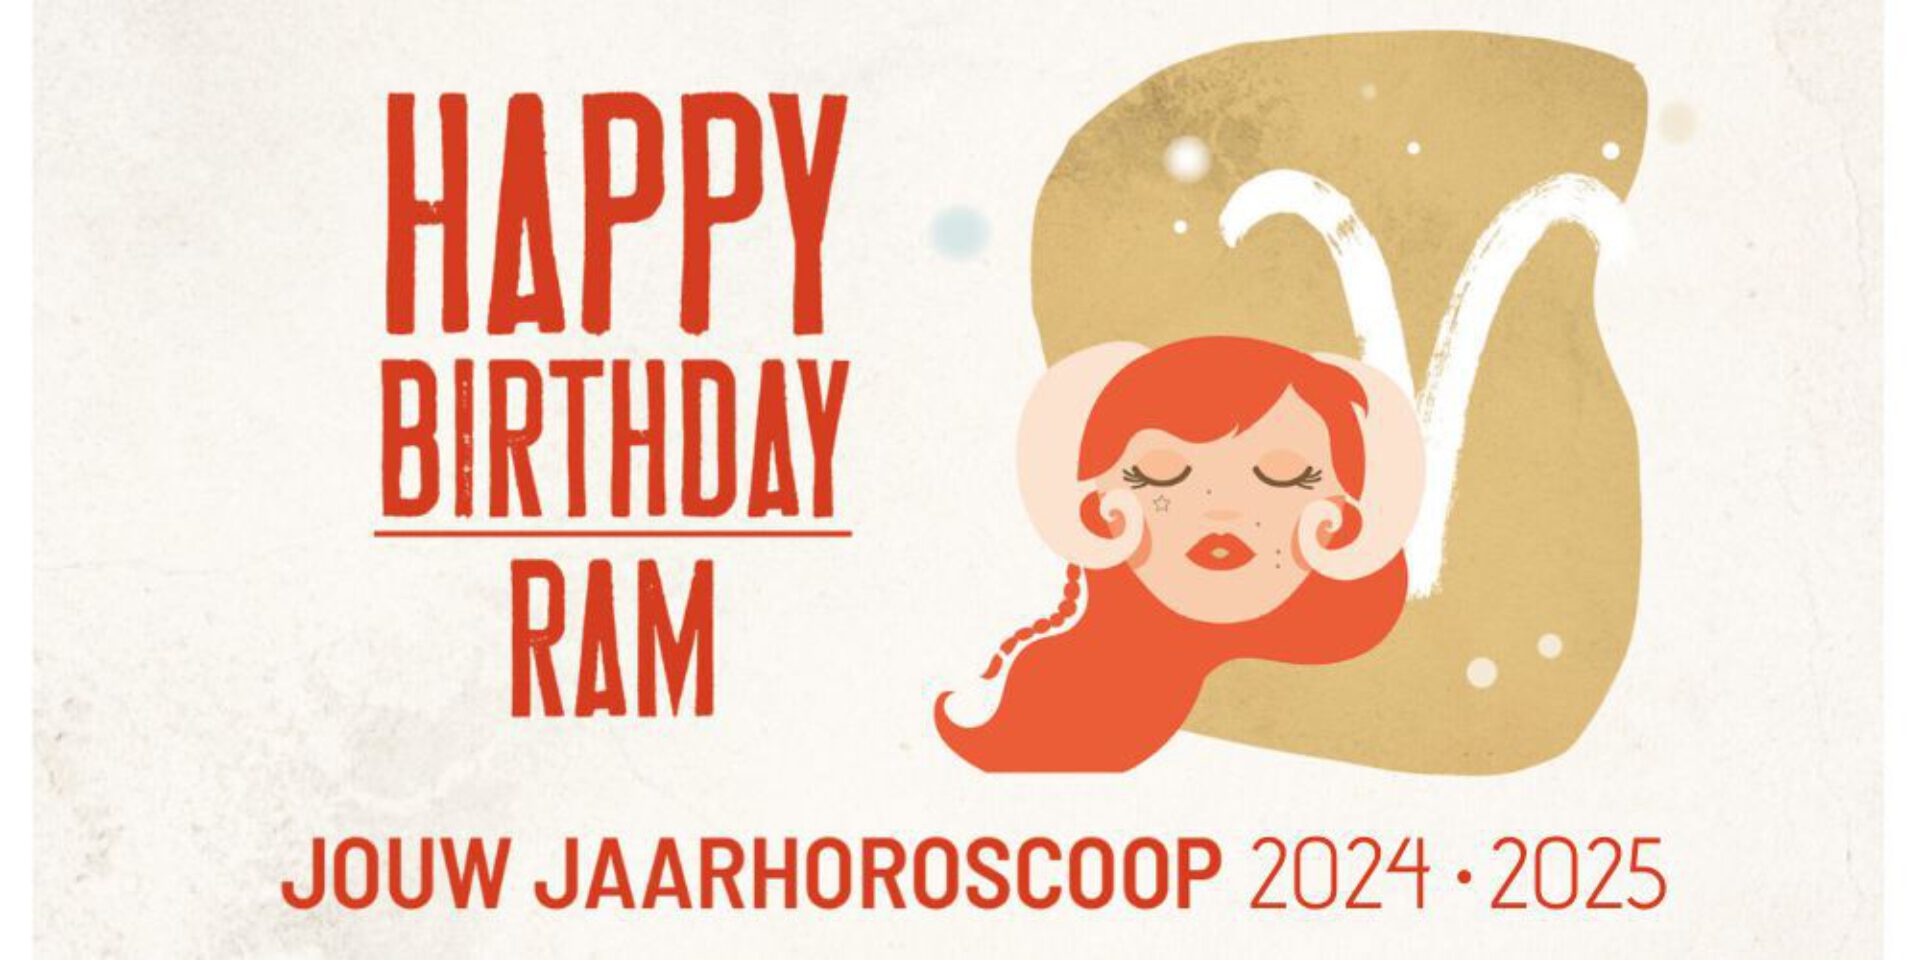 Ram, jouw jaarhoroscoop 2024-2025